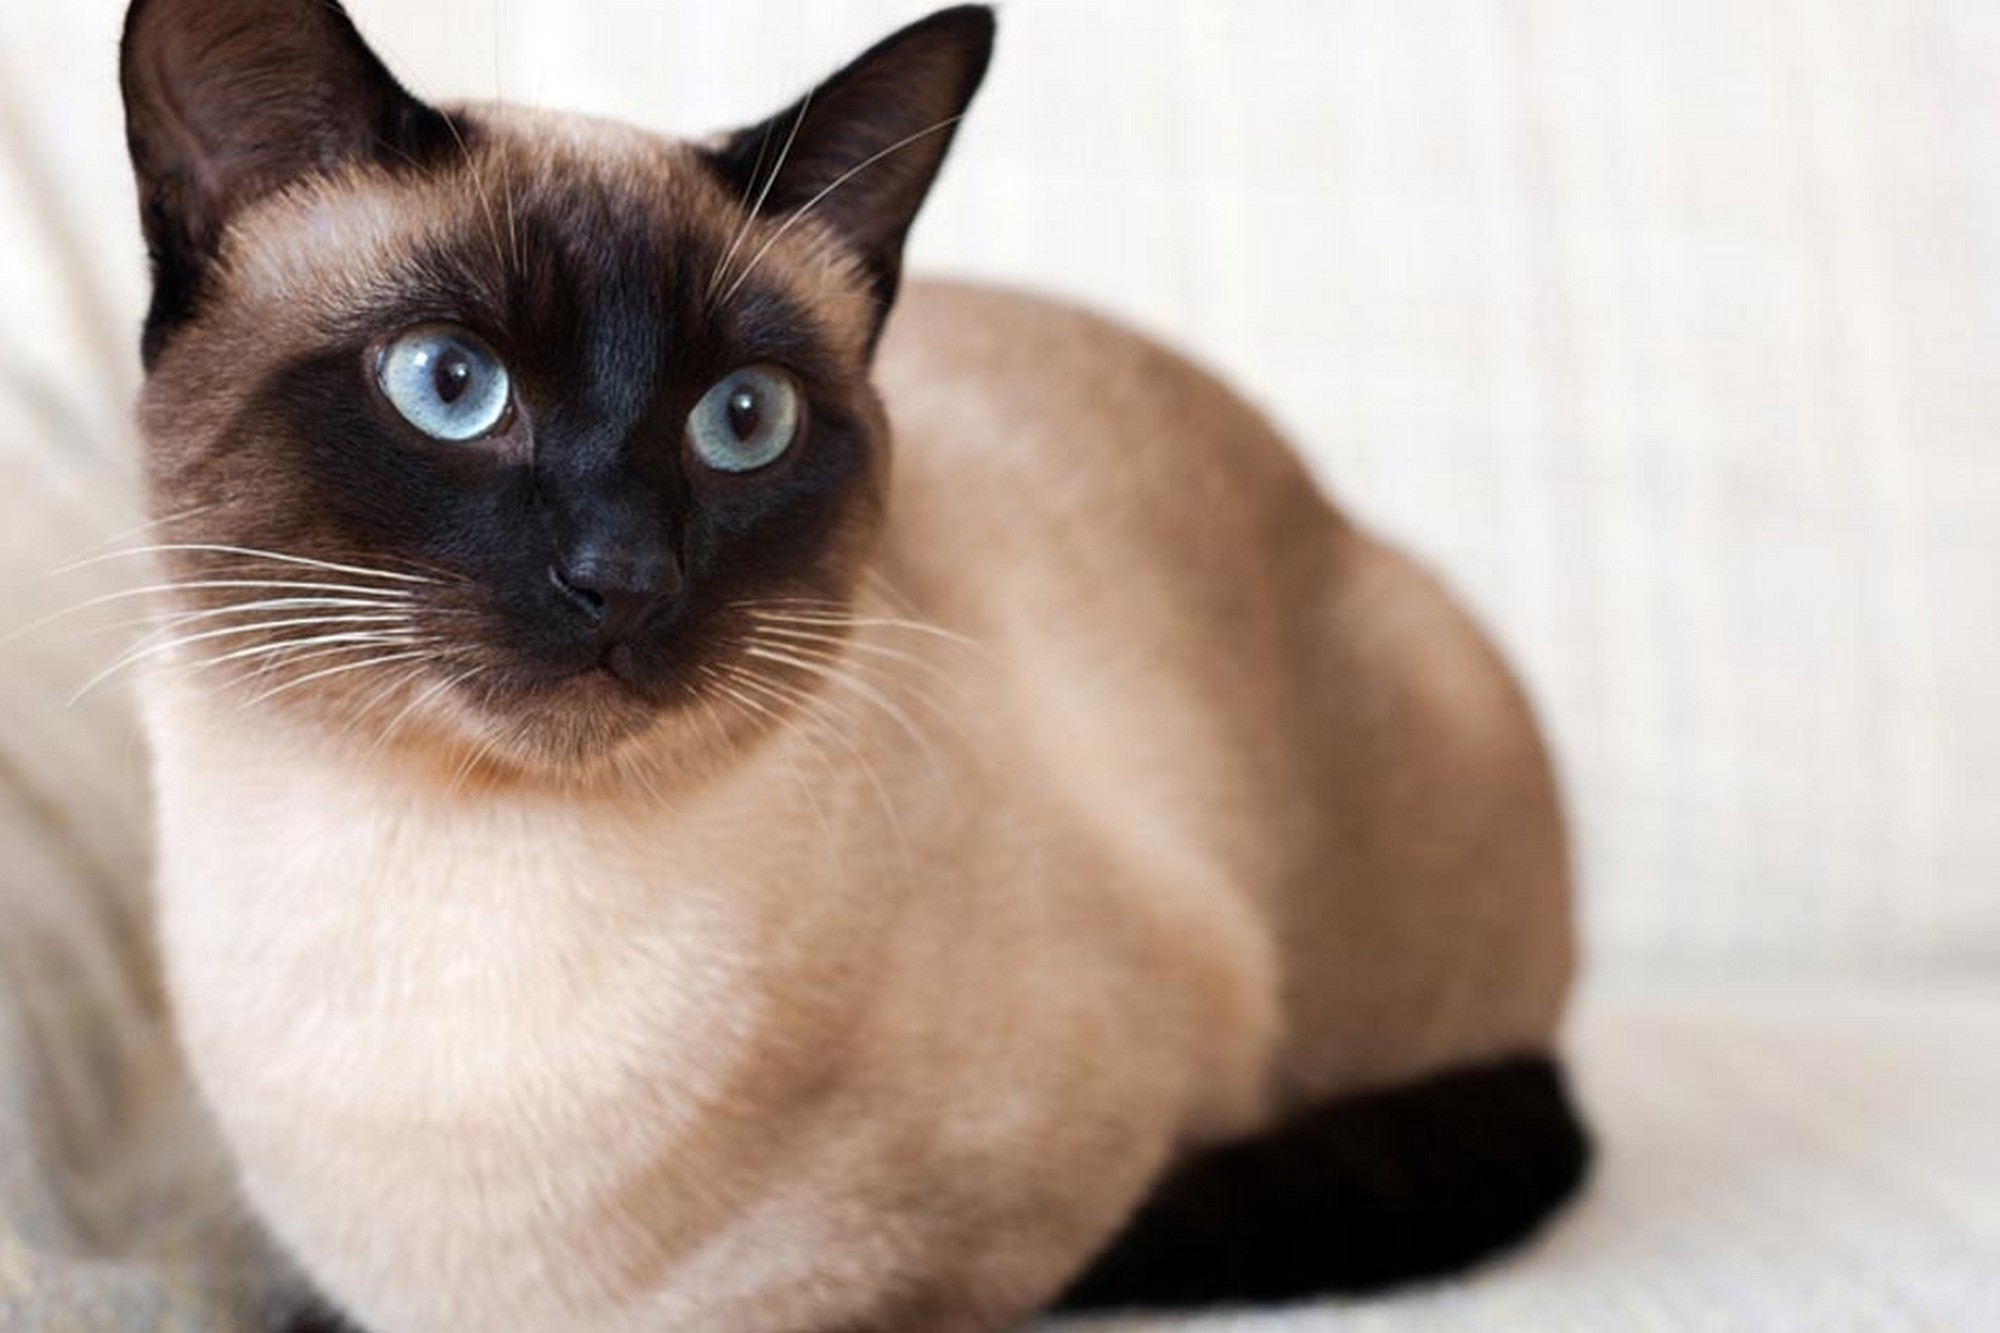 暹罗猫是泰国有名的猫品种,古时常被做为外交赠礼.(图片来自:kapook)